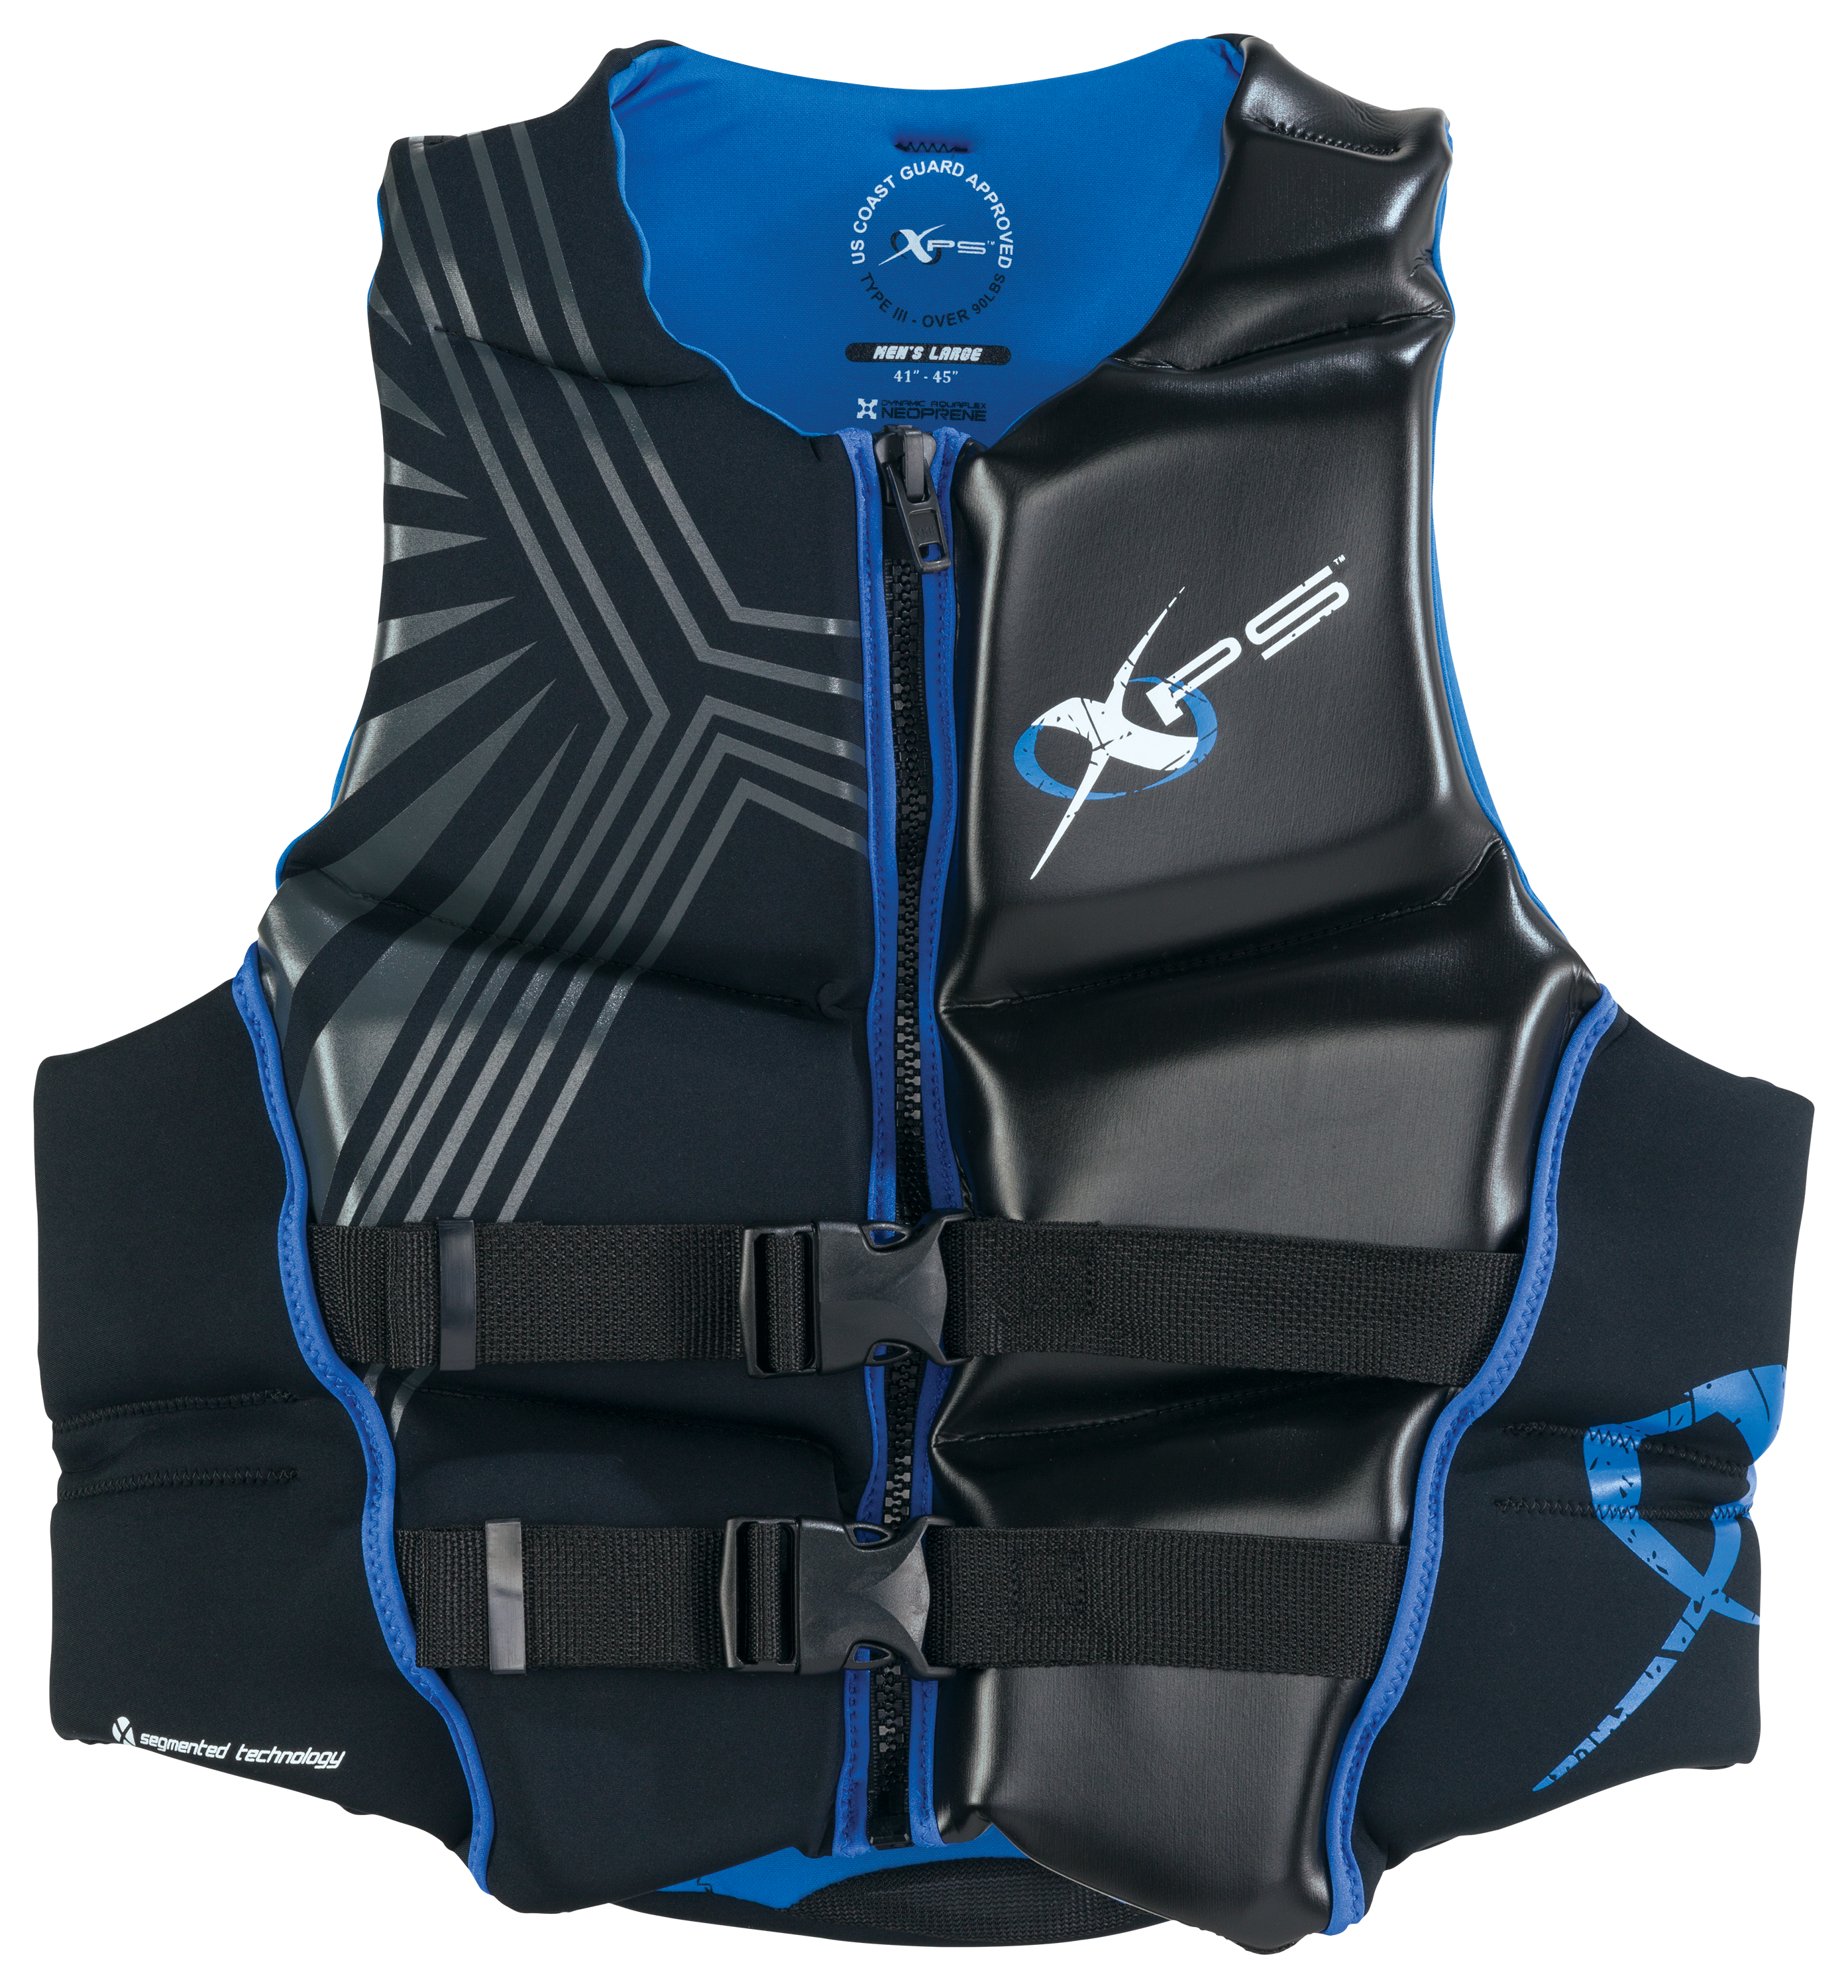 XPS Platinum Neoprene Segmented Life Jacket for Men - Black Royal - M